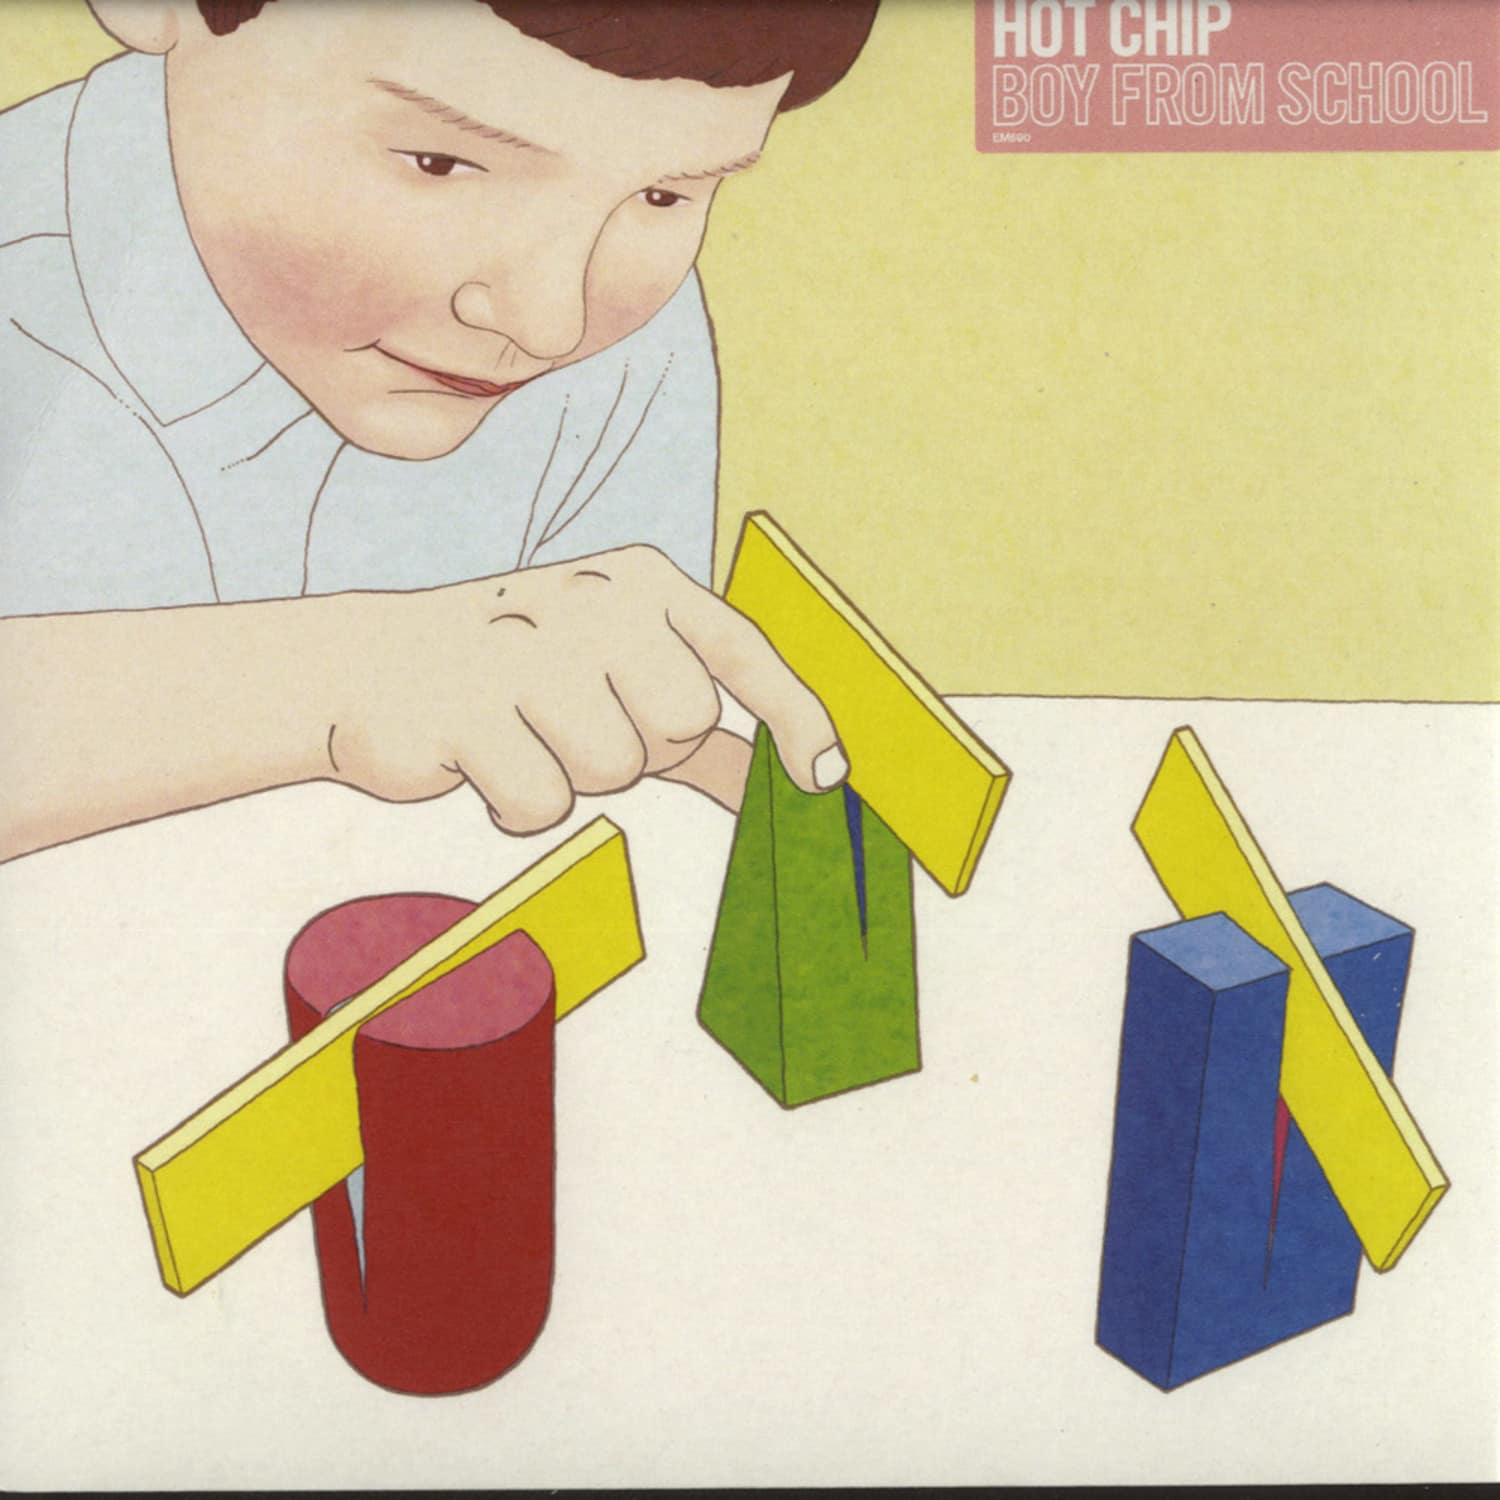 Hot Chip - BOY FROM SCHOOL 